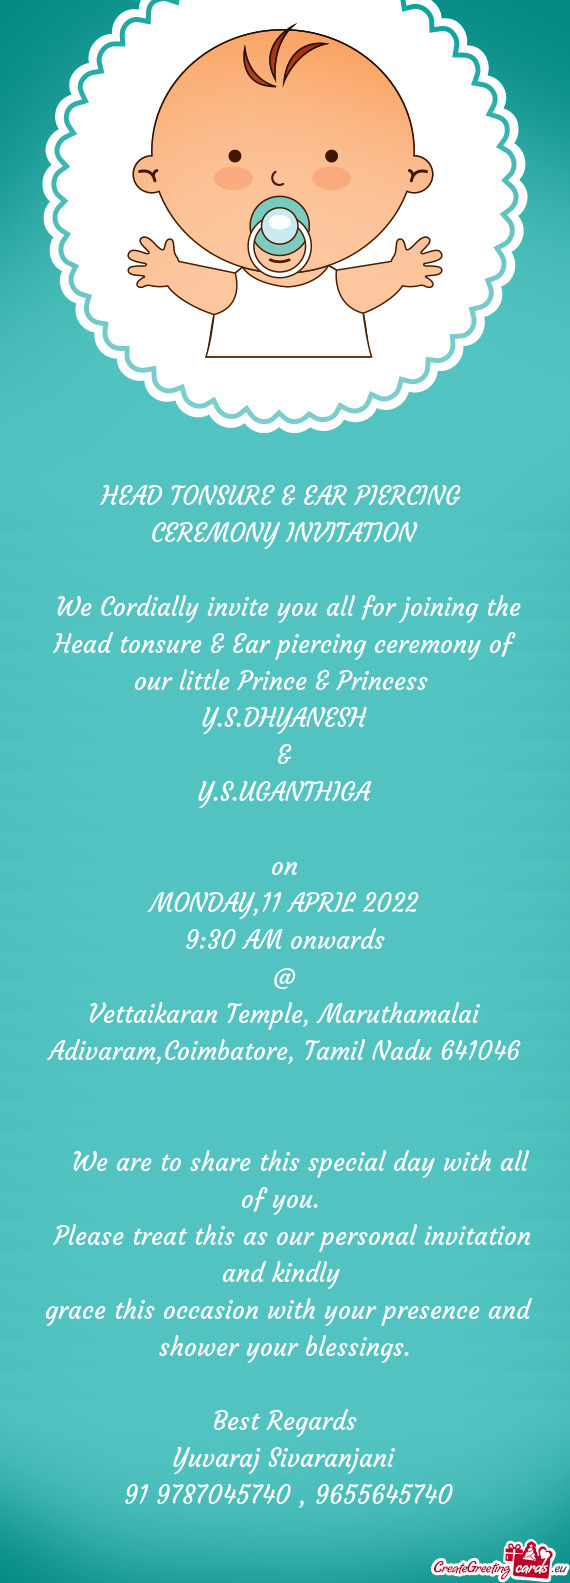 Vettaikaran Temple, Maruthamalai Adivaram,Coimbatore, Tamil Nadu 641046